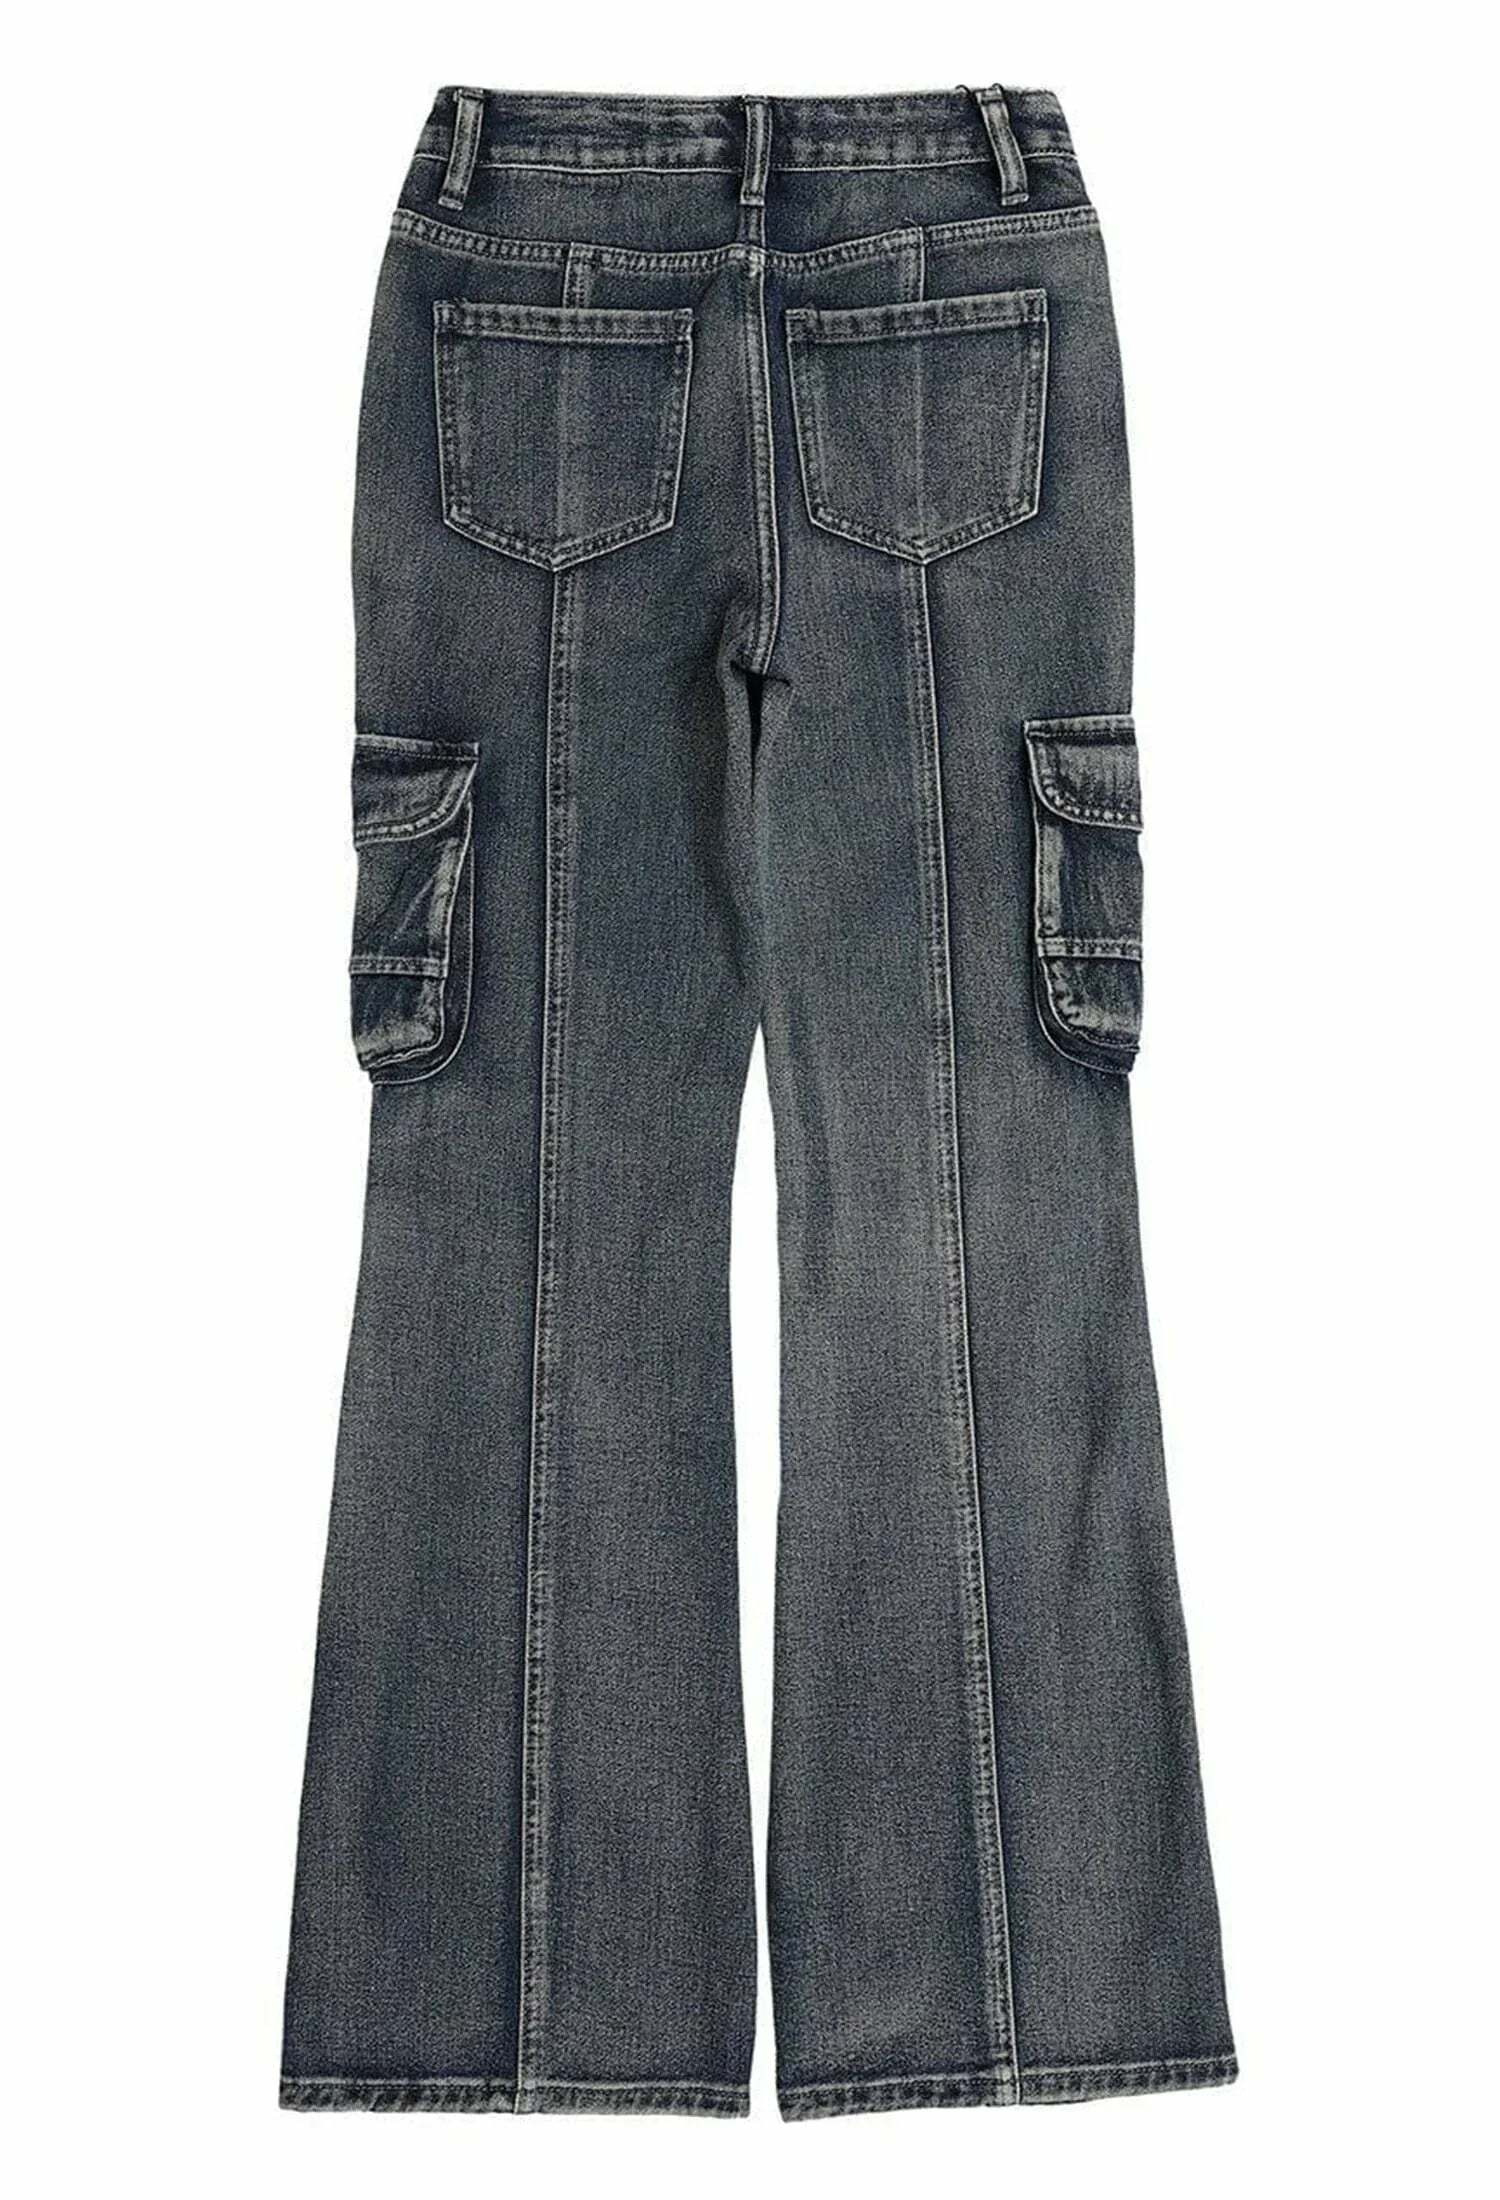 vintage wash slim fit jeans timeless streetwear essential 1968